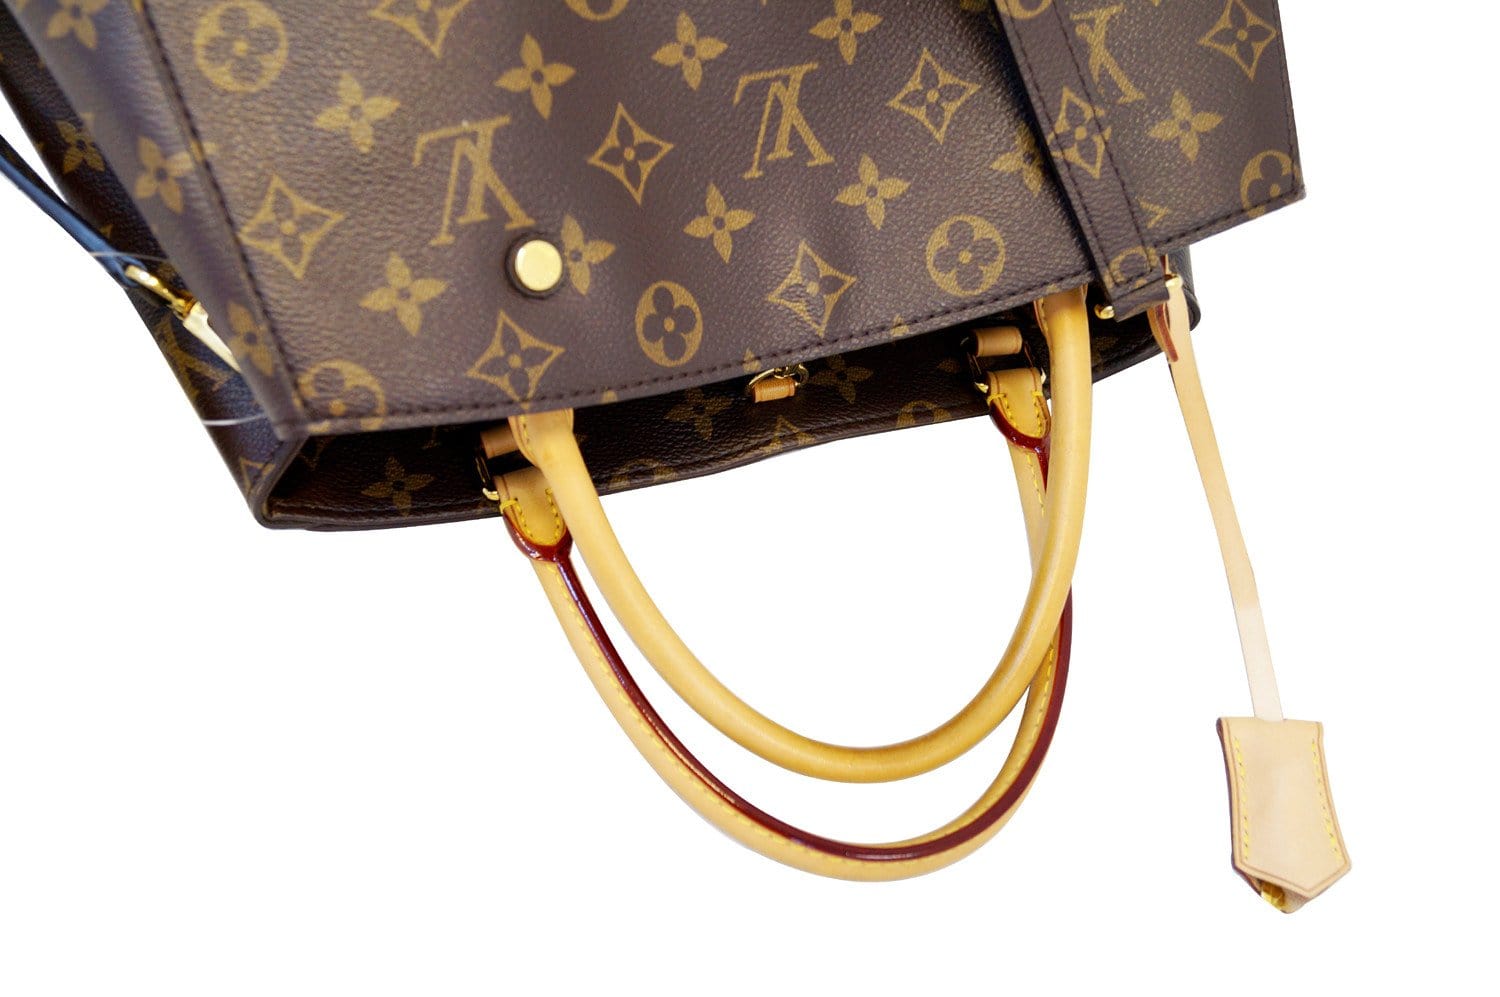 used Pre-owned Louis Vuitton Louis Vuitton Handbag Montaigne Bb Monogram Implant Beige 2way Shoulder M44160 (Good), Adult Unisex, Size: (HxWxD): 20cm